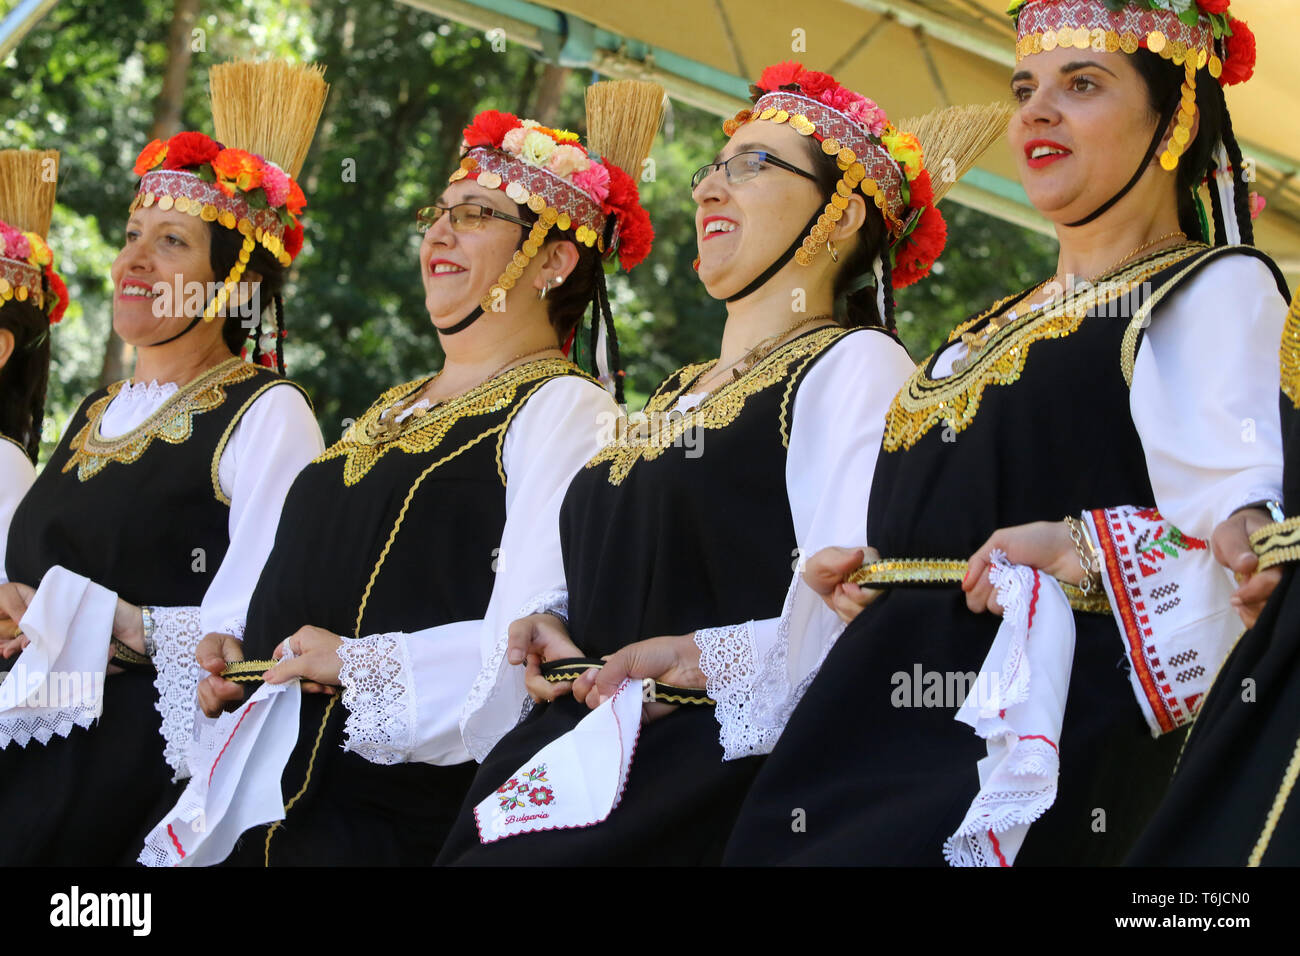 Les gens en costumes folkloriques authentiques traditionnels Banque D'Images